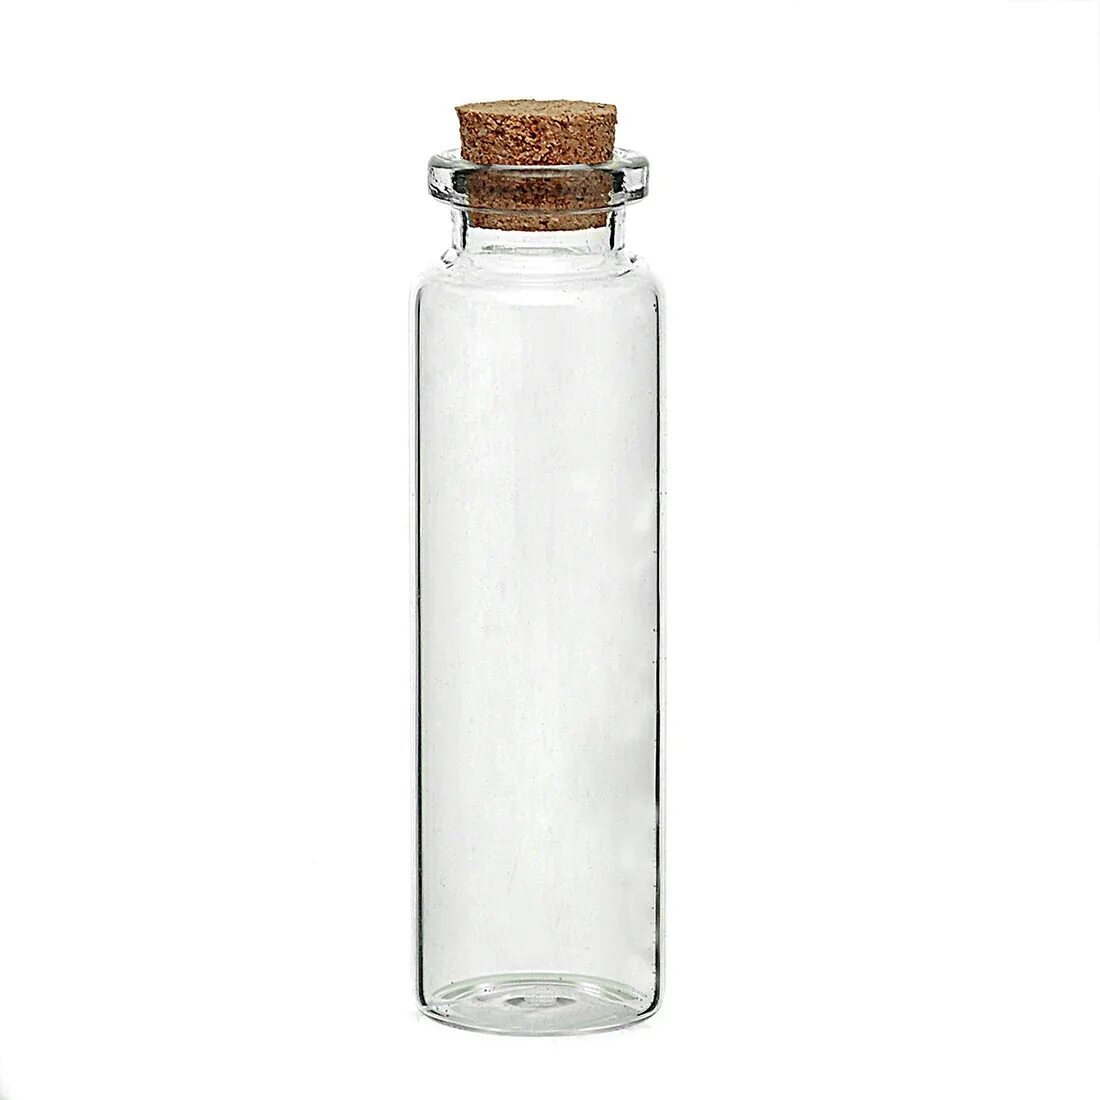 Стеклянная бутылка. Стеклянная бутылка с пробкой. Маленькие стеклянные бутылочки. Бутылка прозрачная стеклянная.